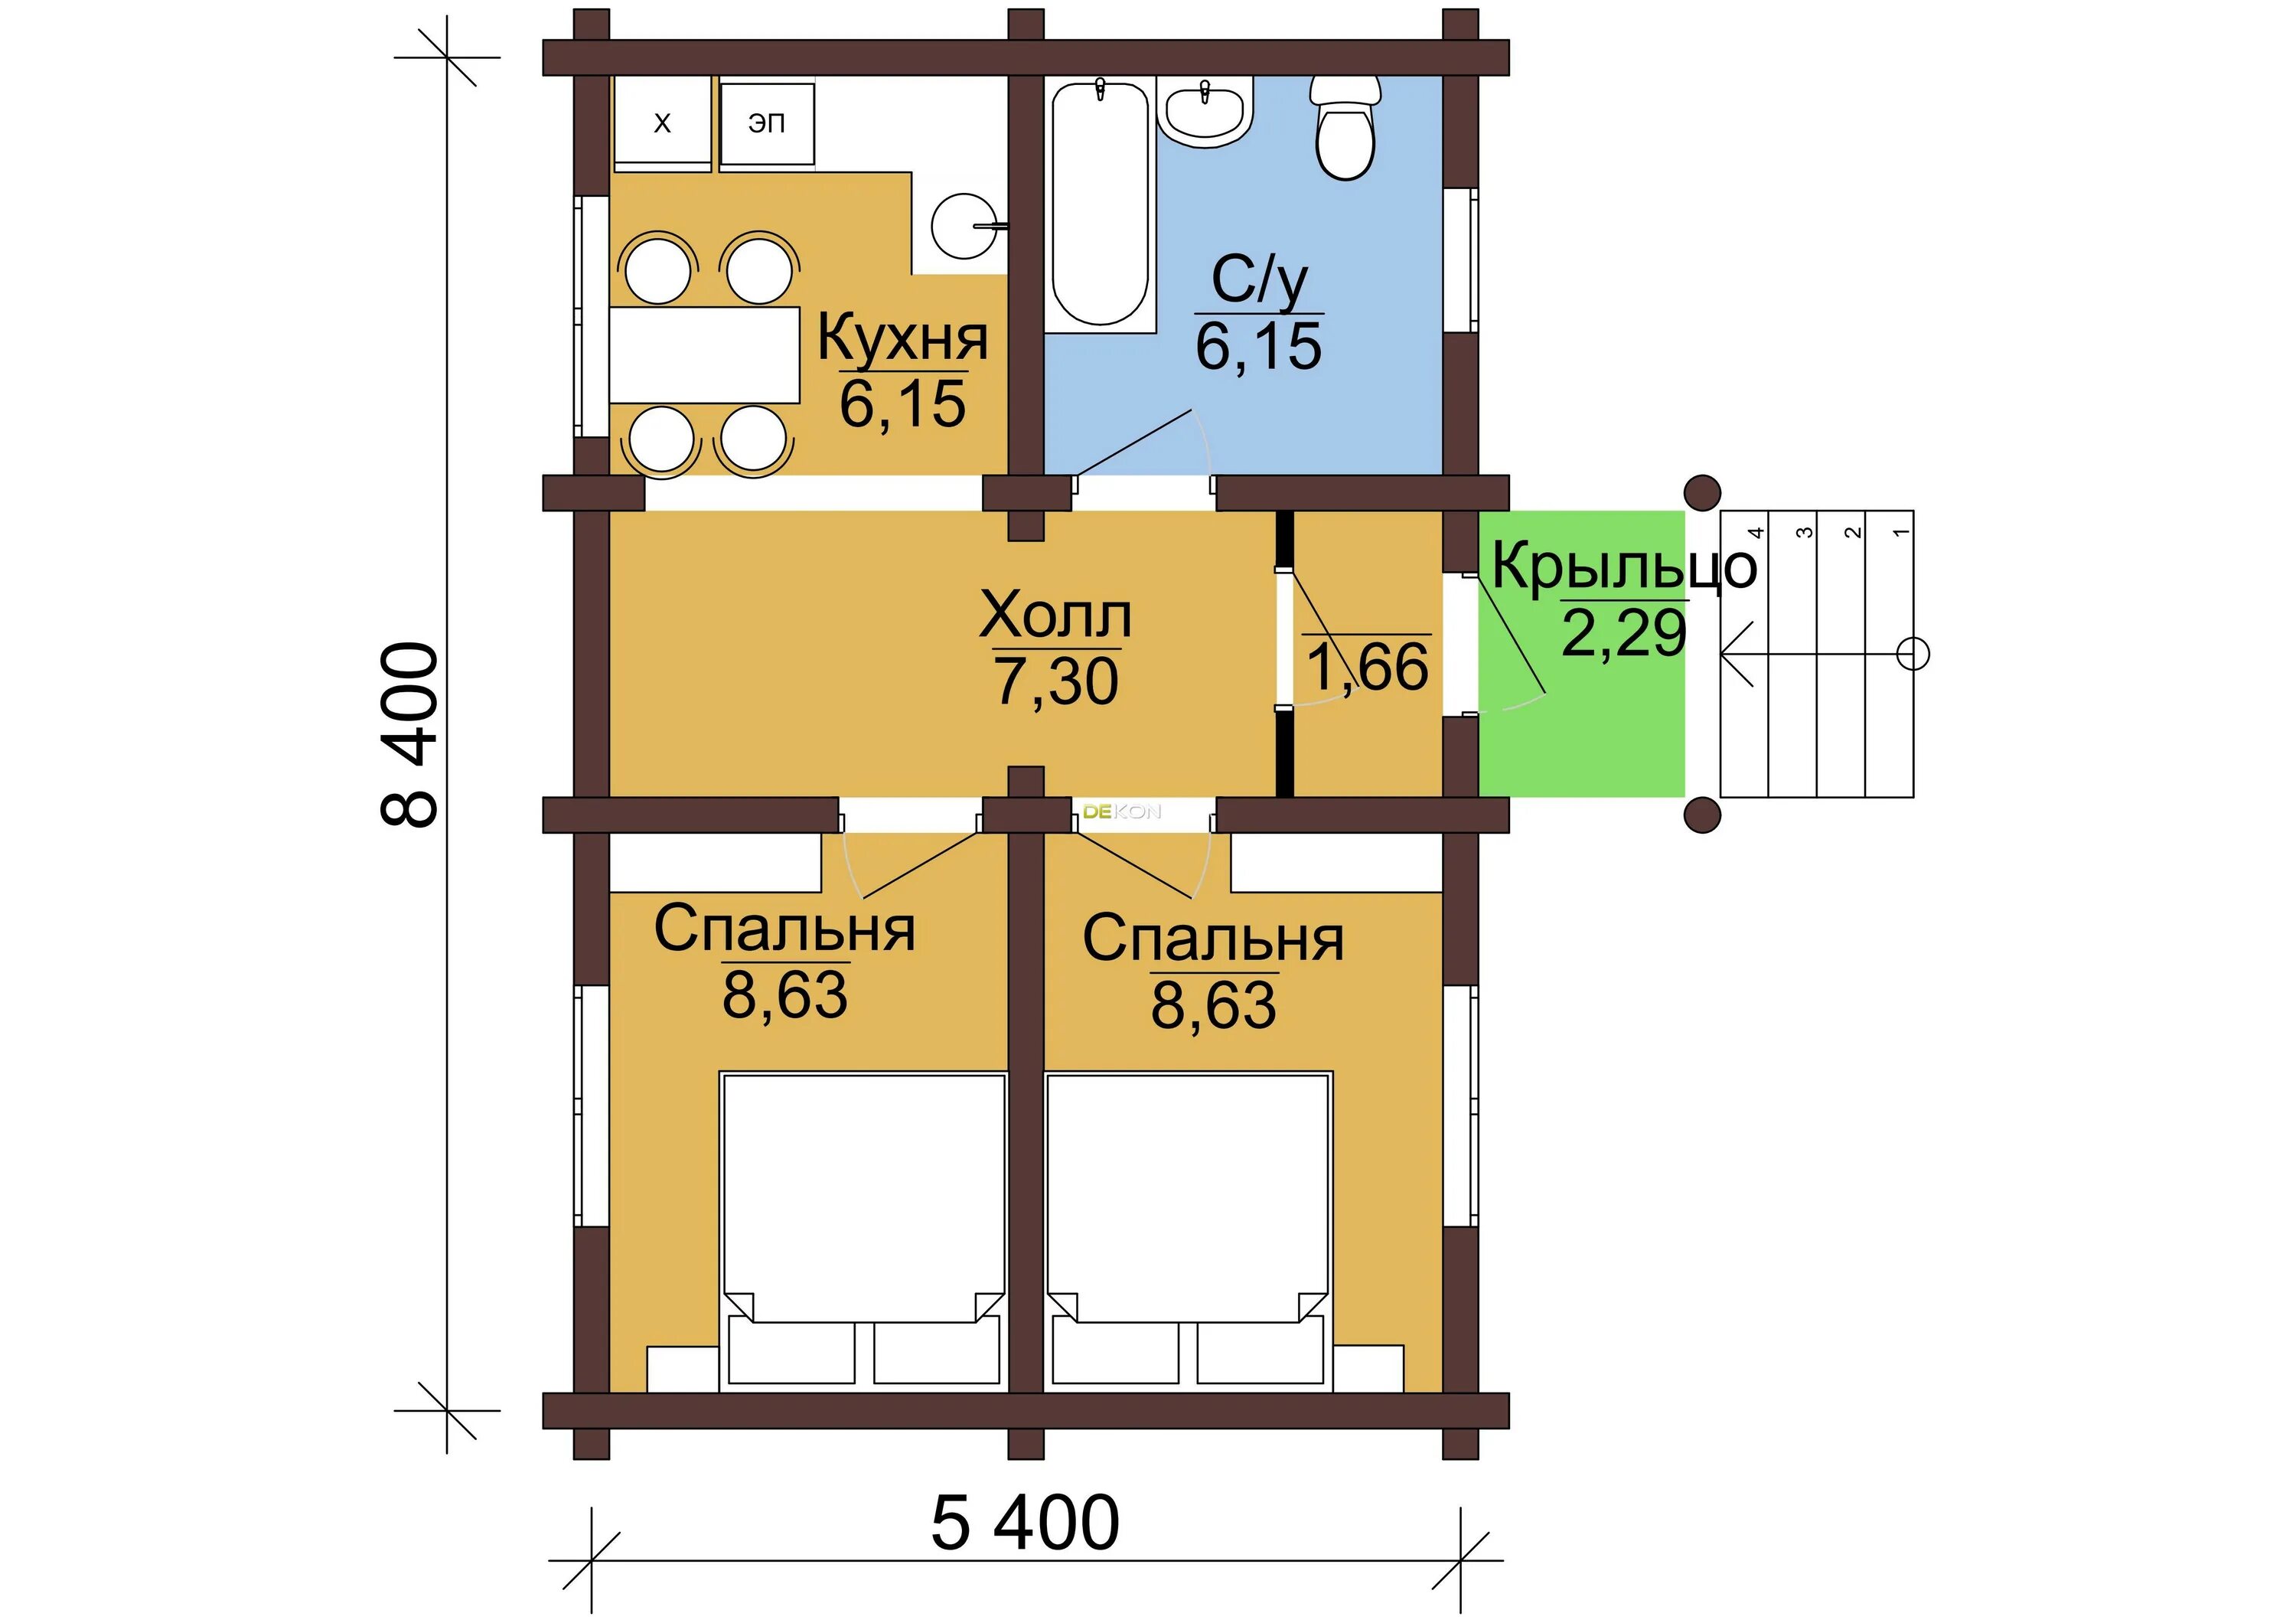 Планировка дома 7 на 8 одноэтажный с двумя спальнями. Планировка дома 6х8 одноэтажный с 2 спальнями. Проект небольшого домика с 2 спальнями. Маленький домик с двумя спальнями.